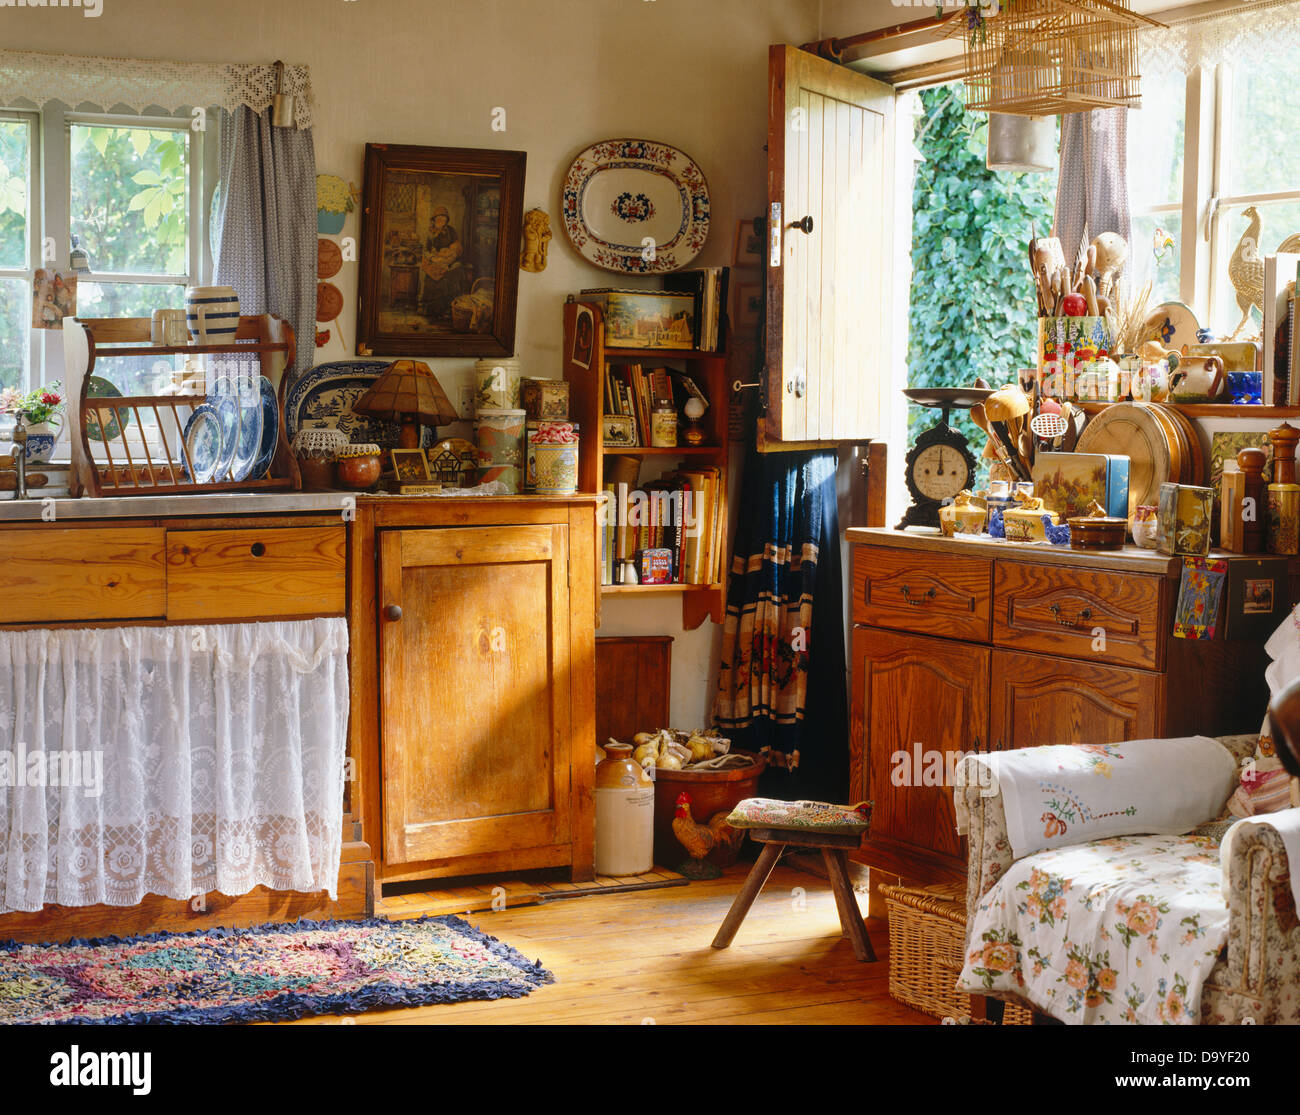 Pin rustique armoires de cuisine cottage avec rideau de dentelle sur meuble  sous lavabo Photo Stock - Alamy